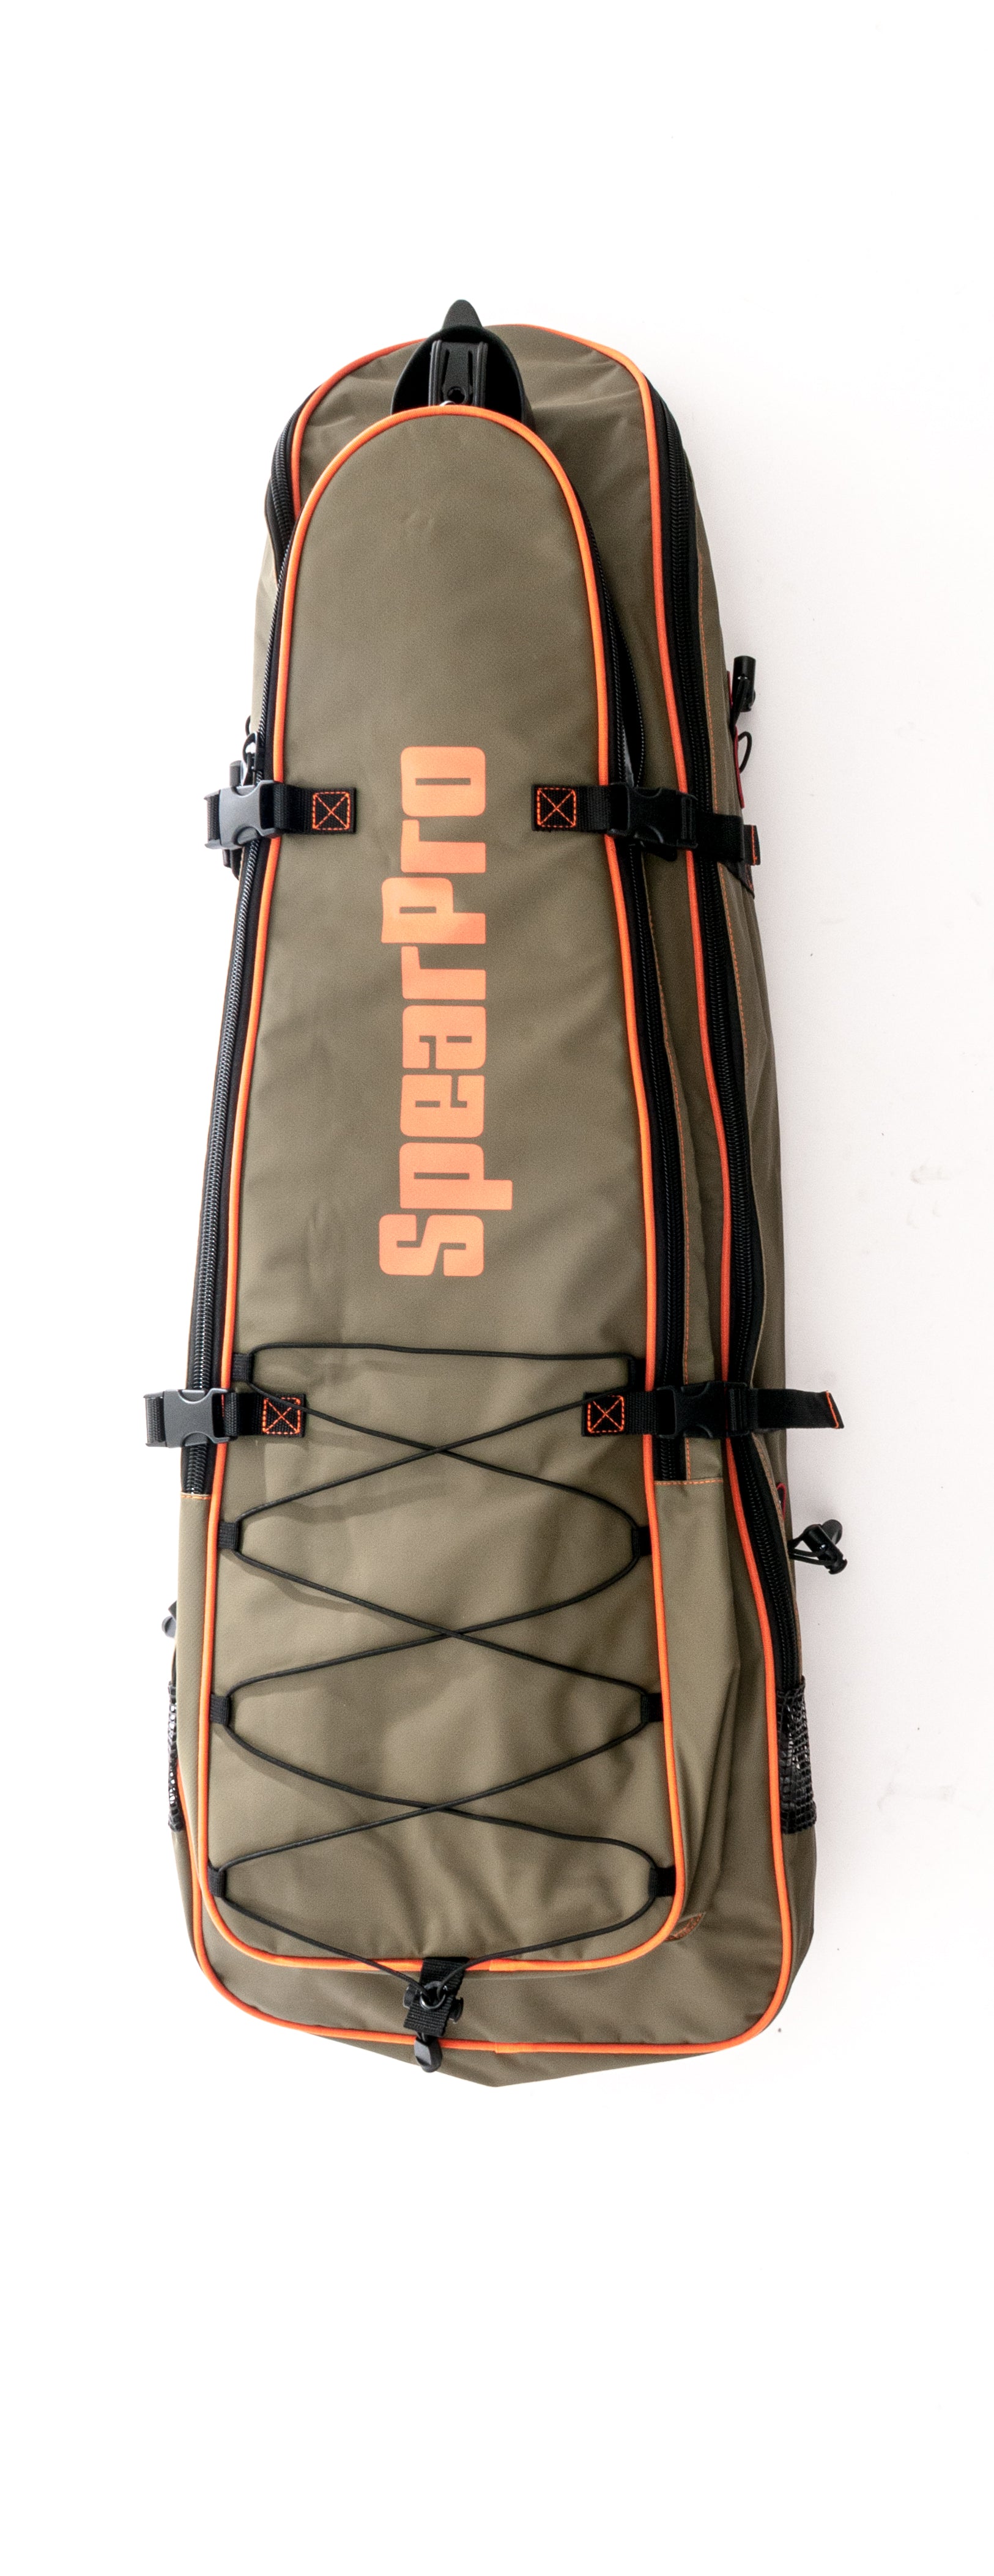 SpearPro Deluxe fin backpack 44 - Spear America